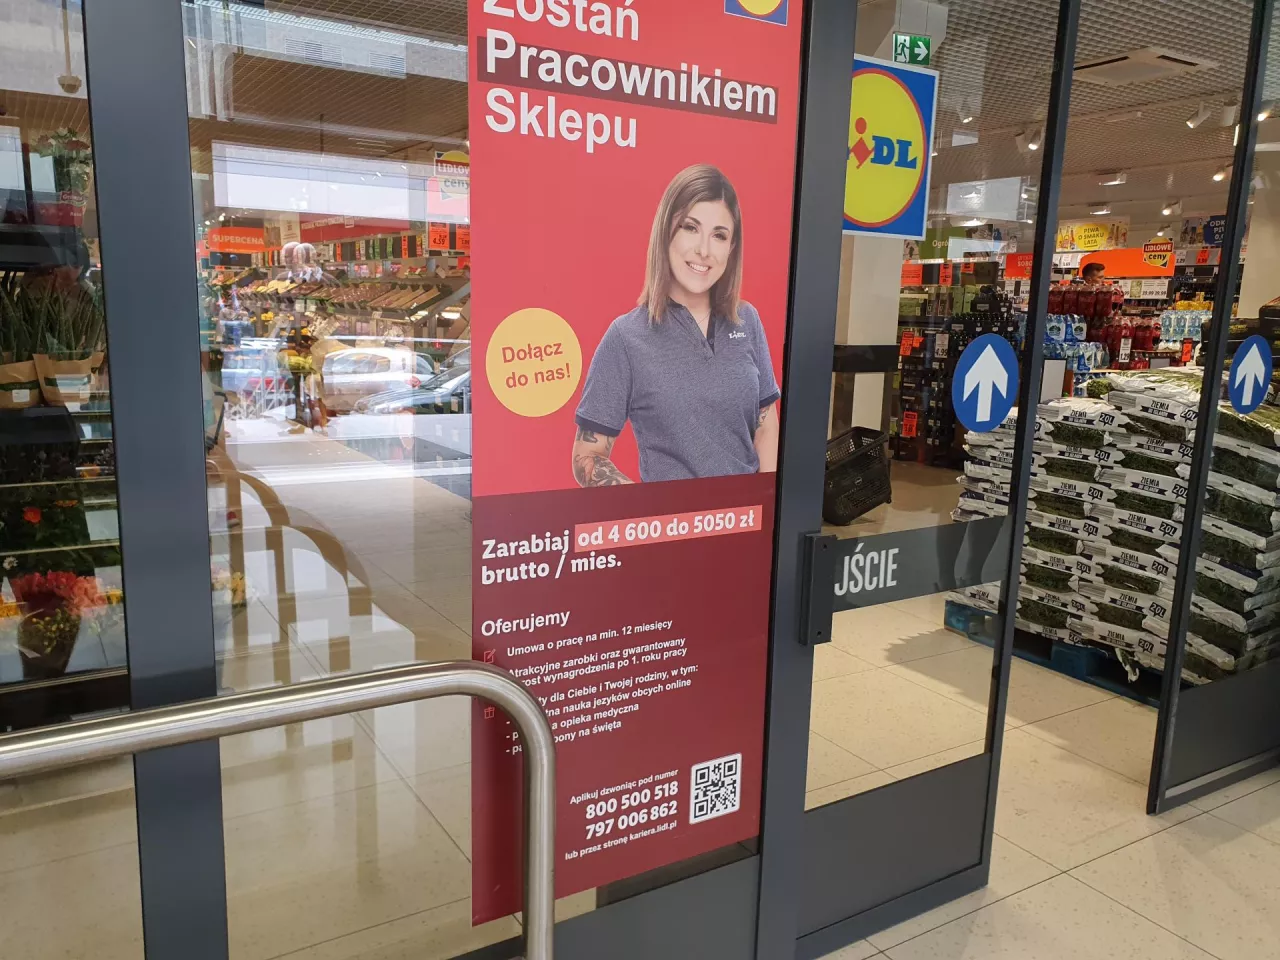 Sieci handlowe automatyzują sprzedaż, ale ofert pracy w handlu wciąż jest bardzo dużo (fot. wiadomoscihandlowe.pl)